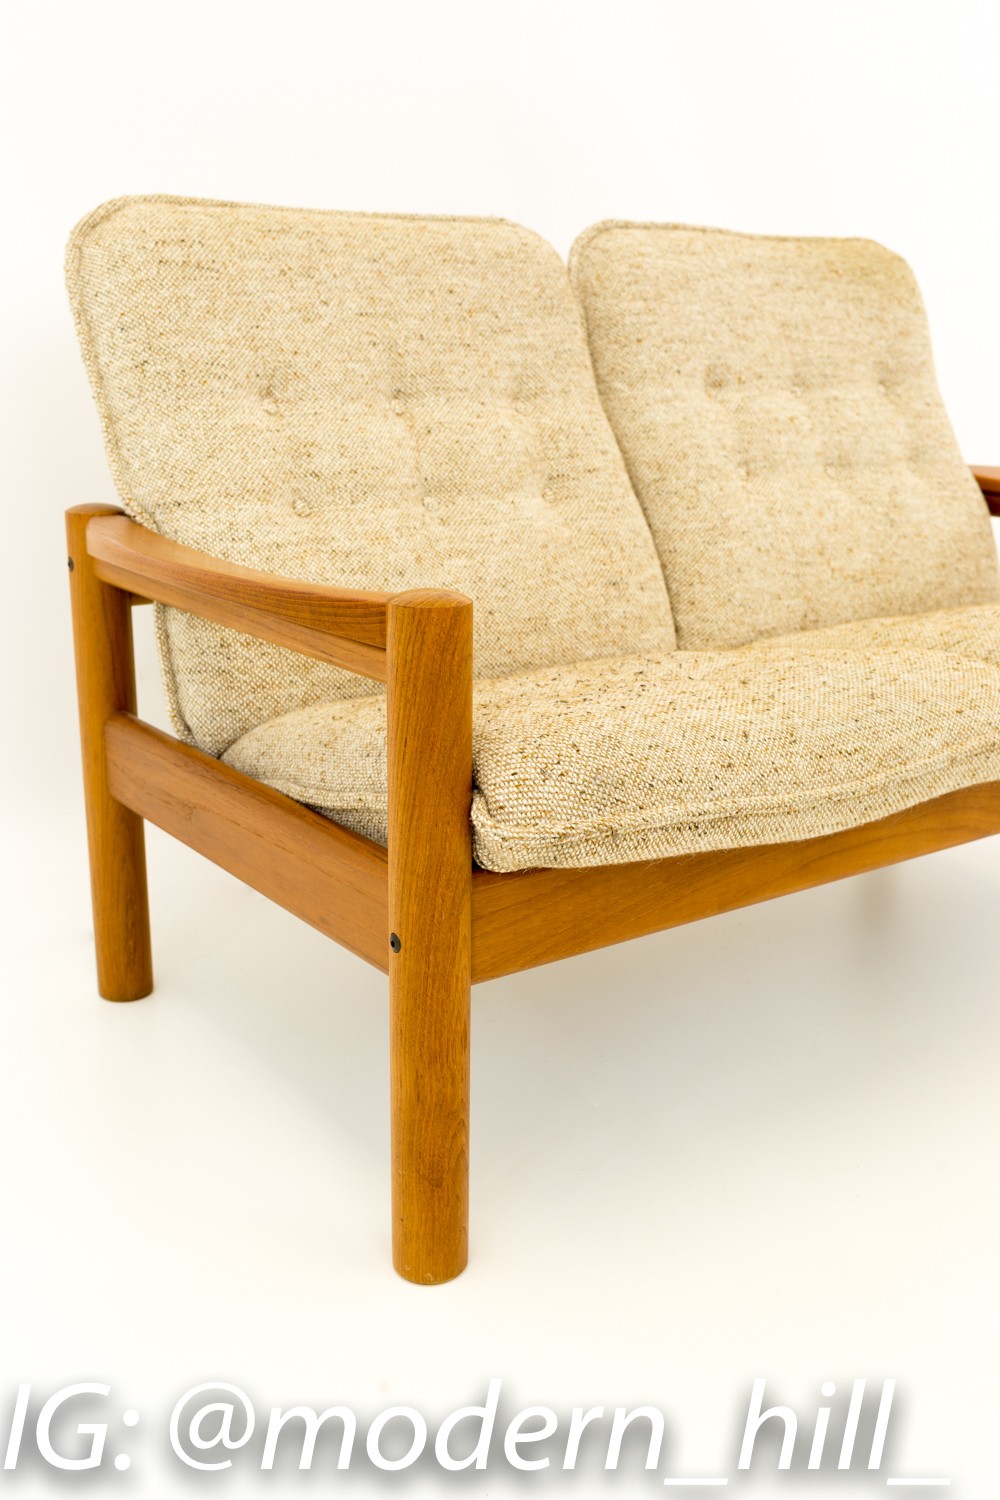 Tarm Stole Og Mobelfabrik Style Mid Century Teak Upholstered Sofa Settee by Domino Mobler